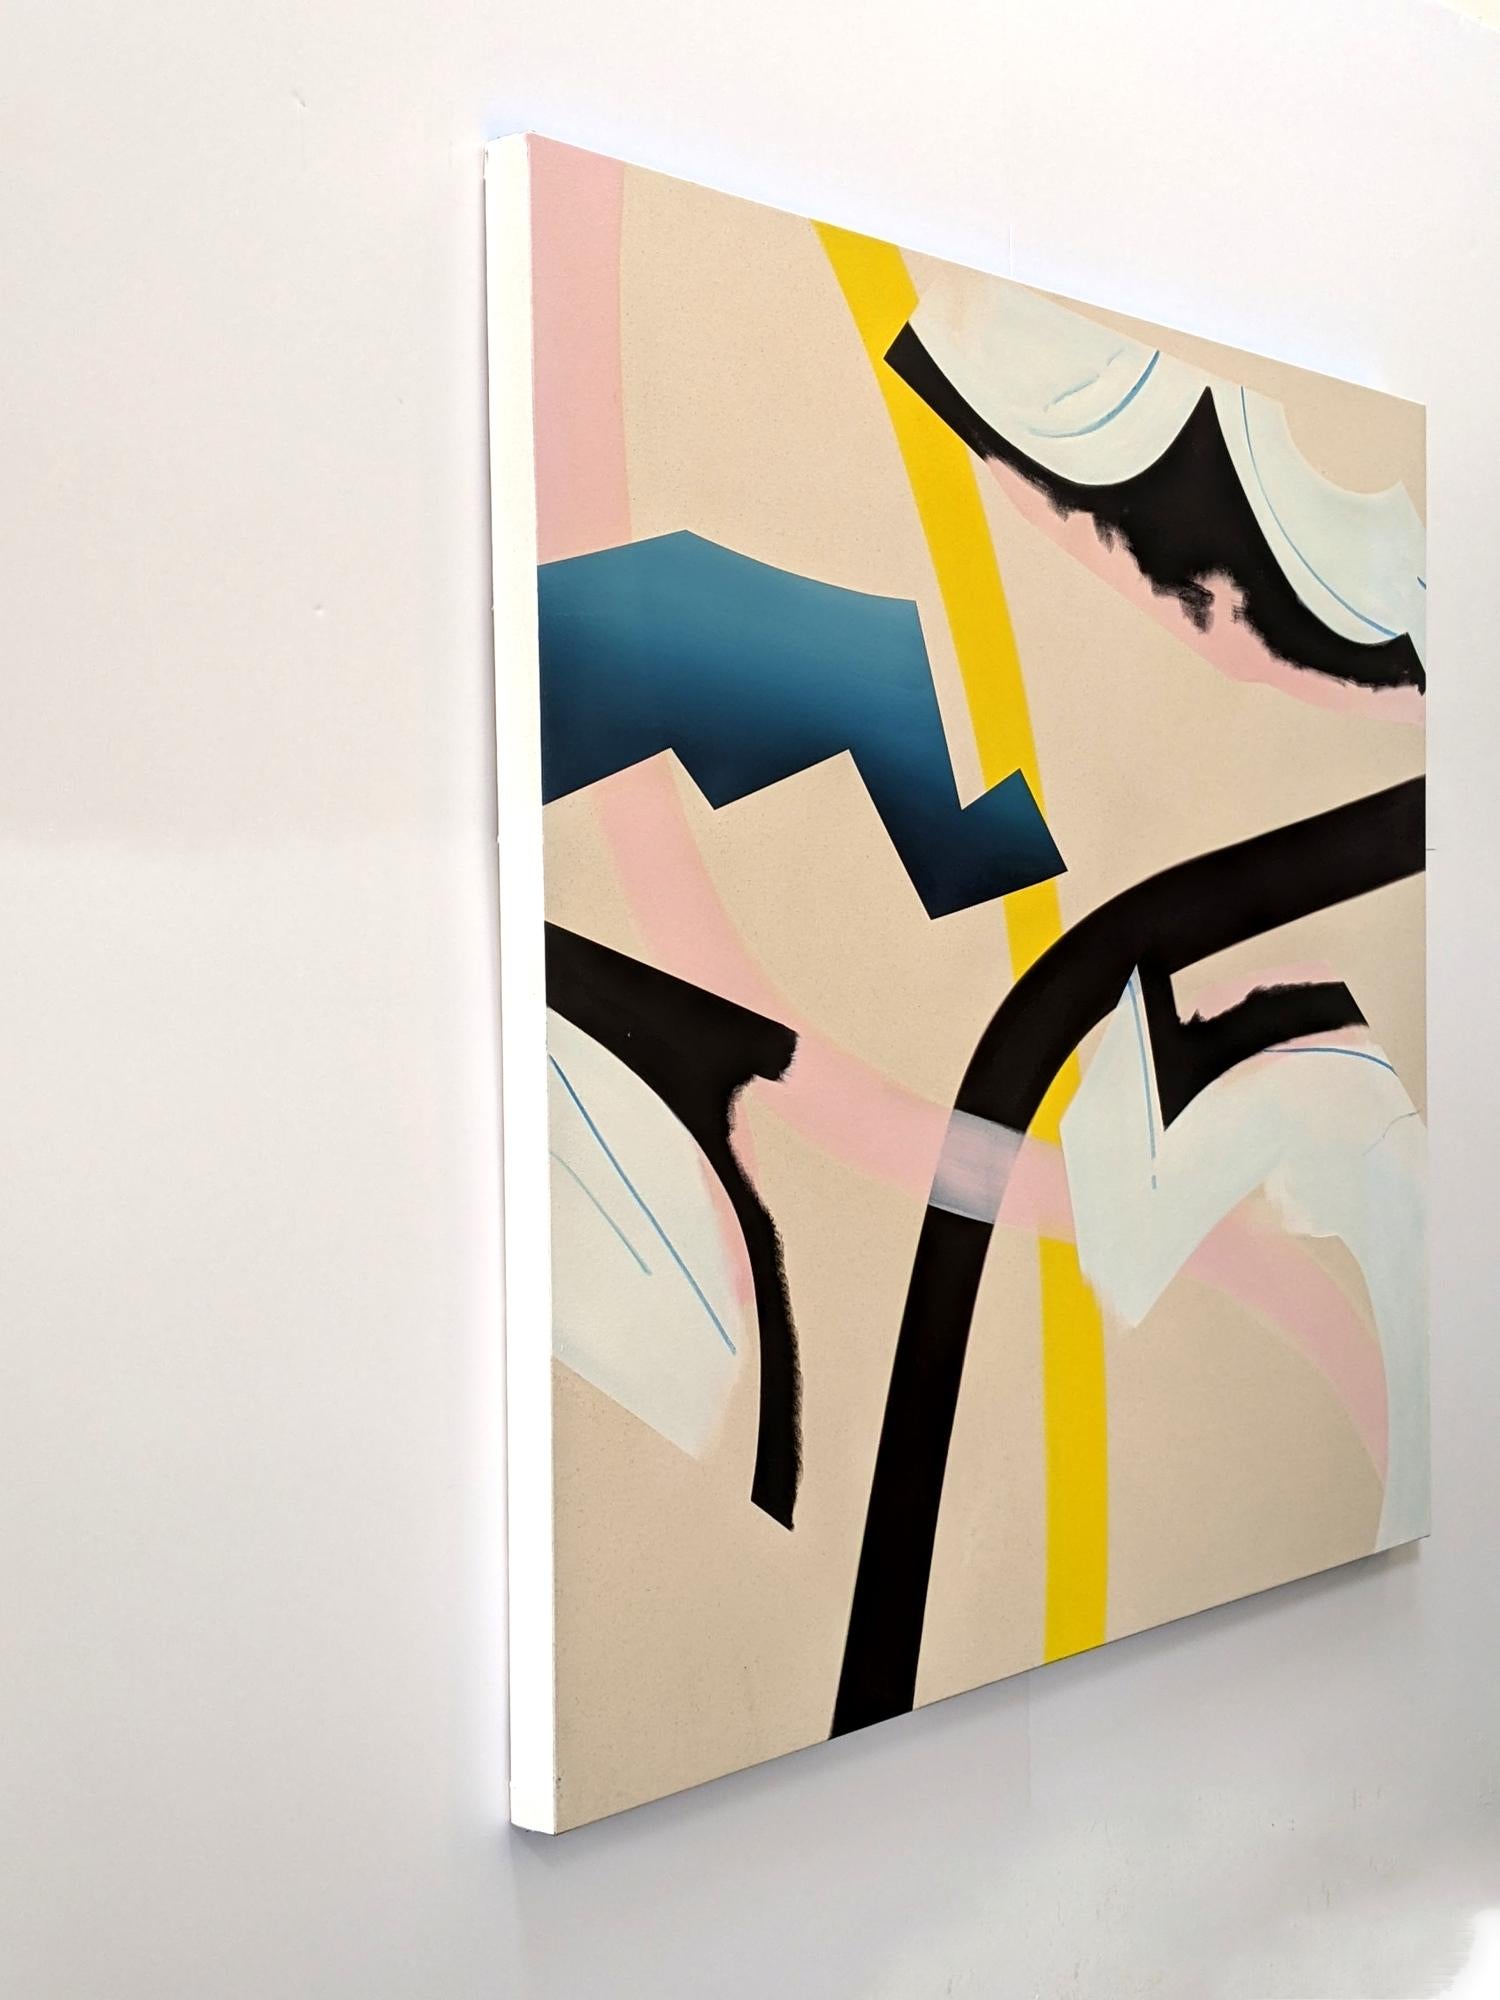 In diesem lyrischen, abstrakten Werk des in Montreal geborenen Mel Davis überschneiden sich organische Formen in einer spielerischen Komposition. Mit Form und Farbe - blau, gelb, rosa, schwarz und schneeweiß - erfindet Davis die traditionelle